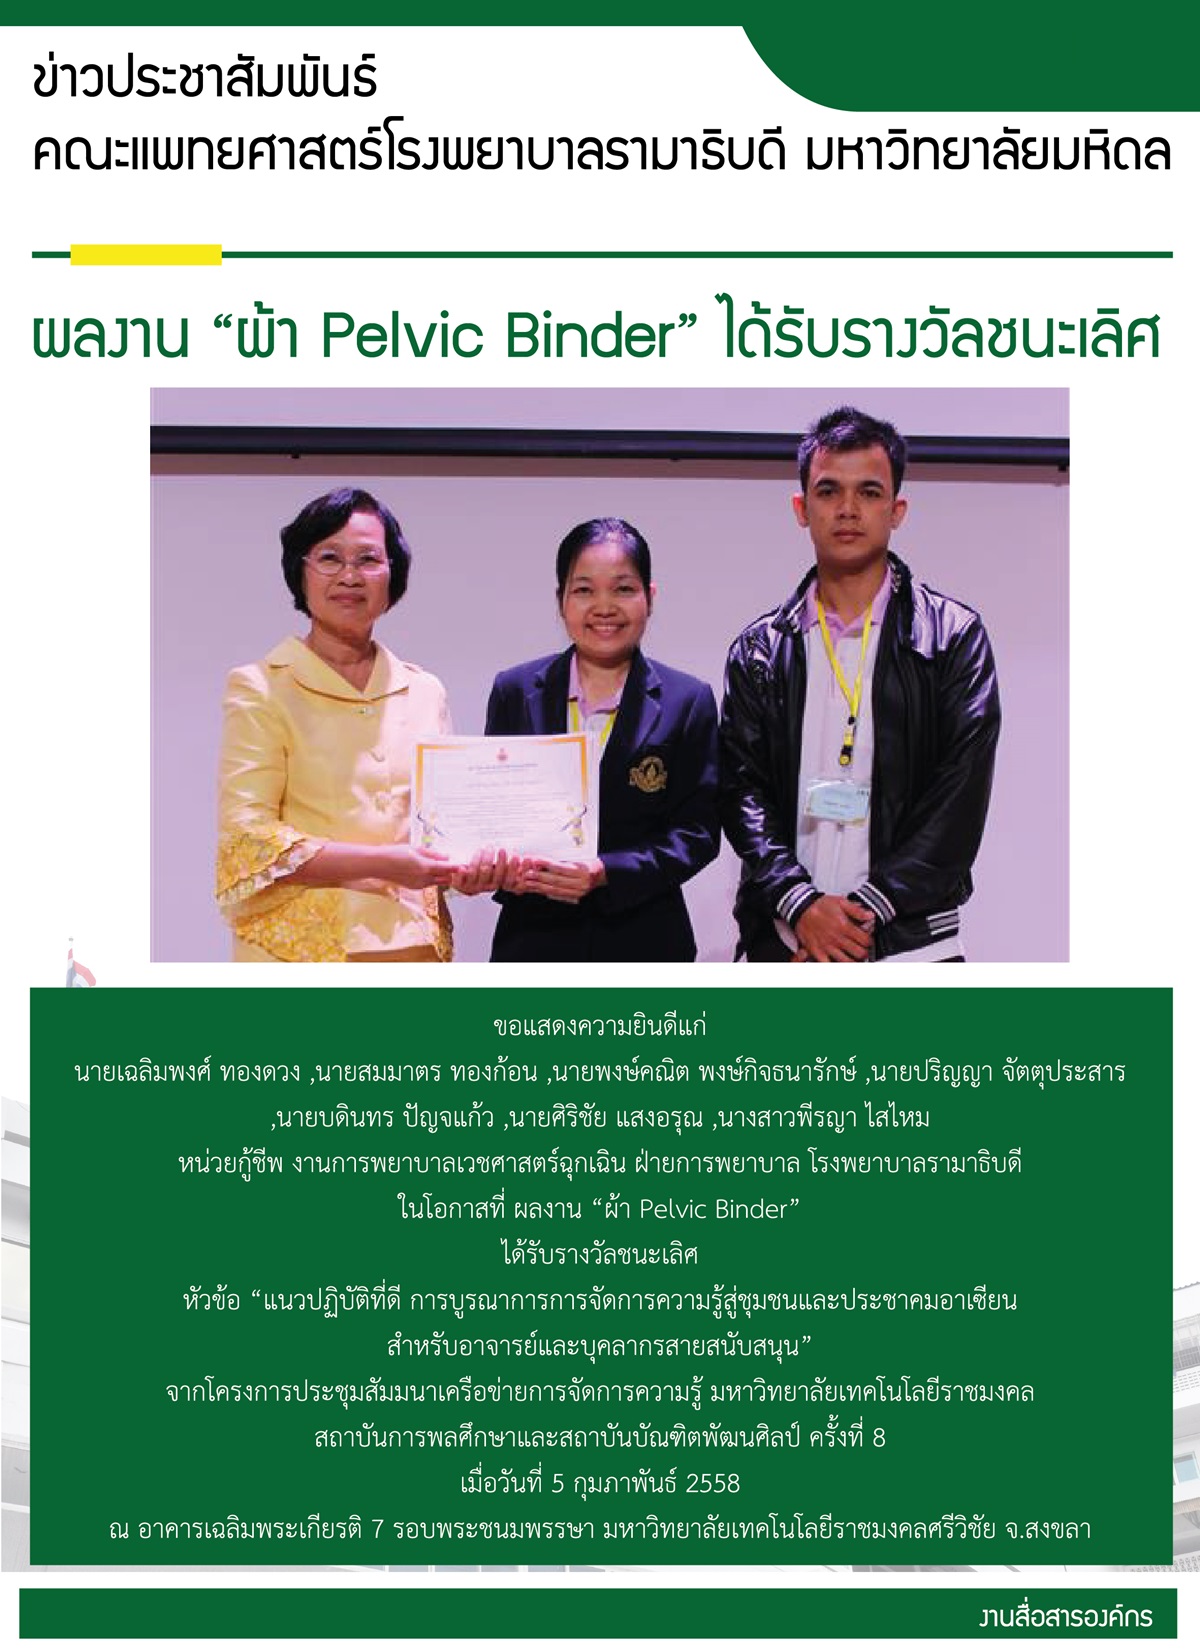 ผลงาน “ผ้า Pelvic Binder” ได้รับรางวัลชนะเลิศ 